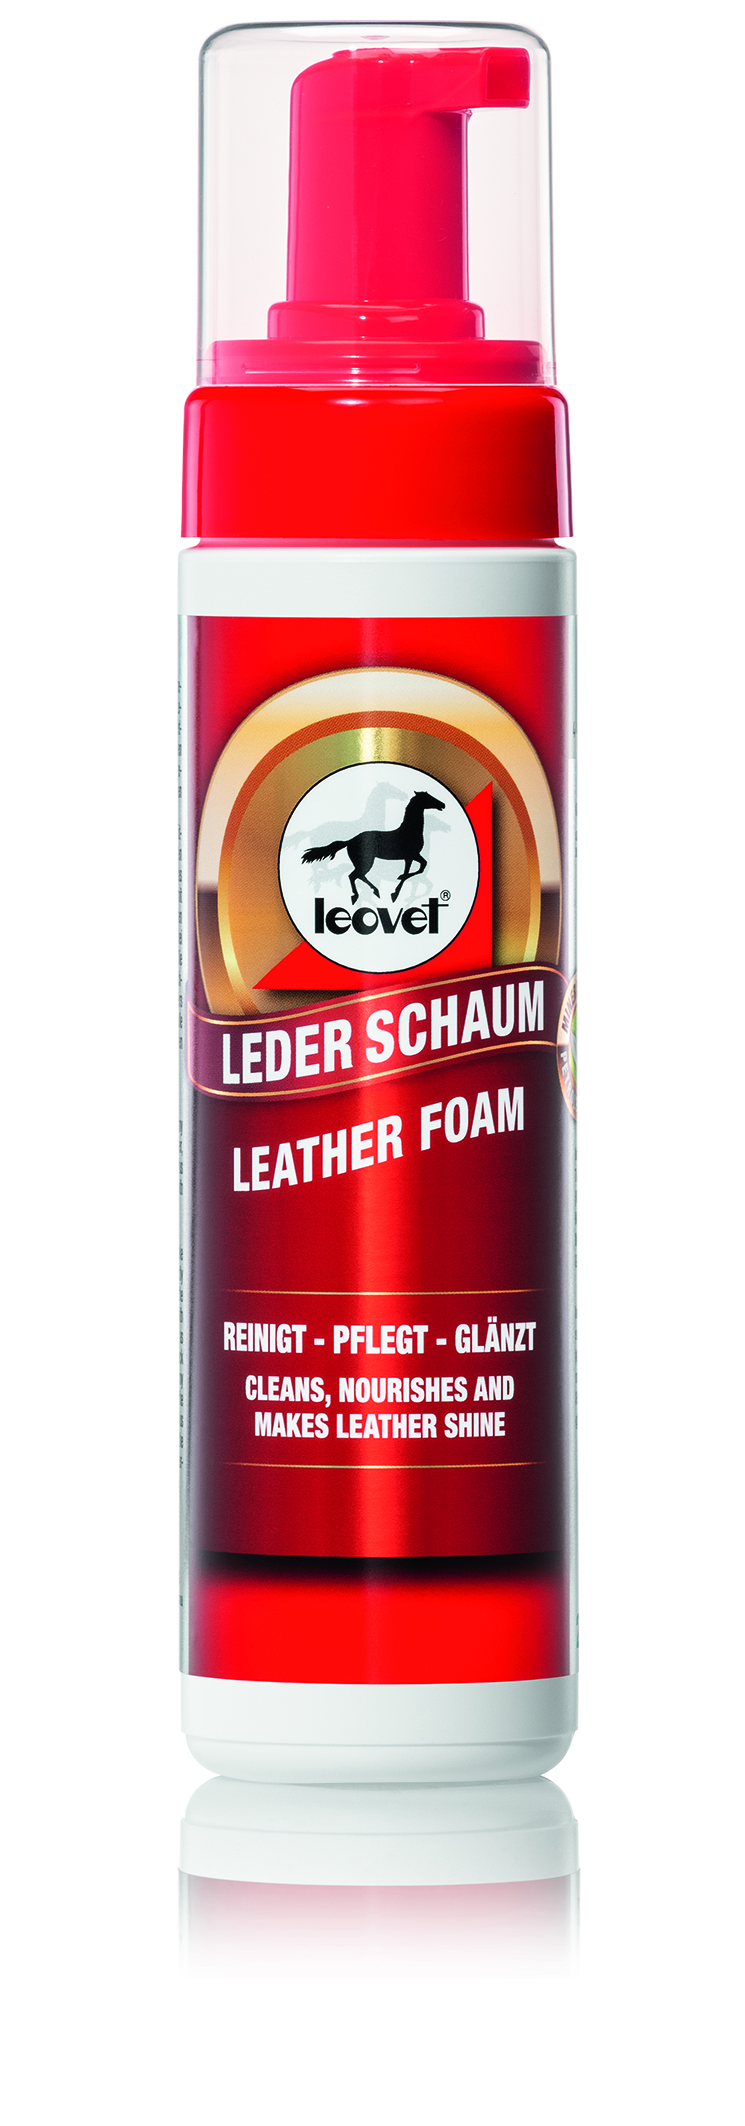 Leovet Leather Foam 200ml